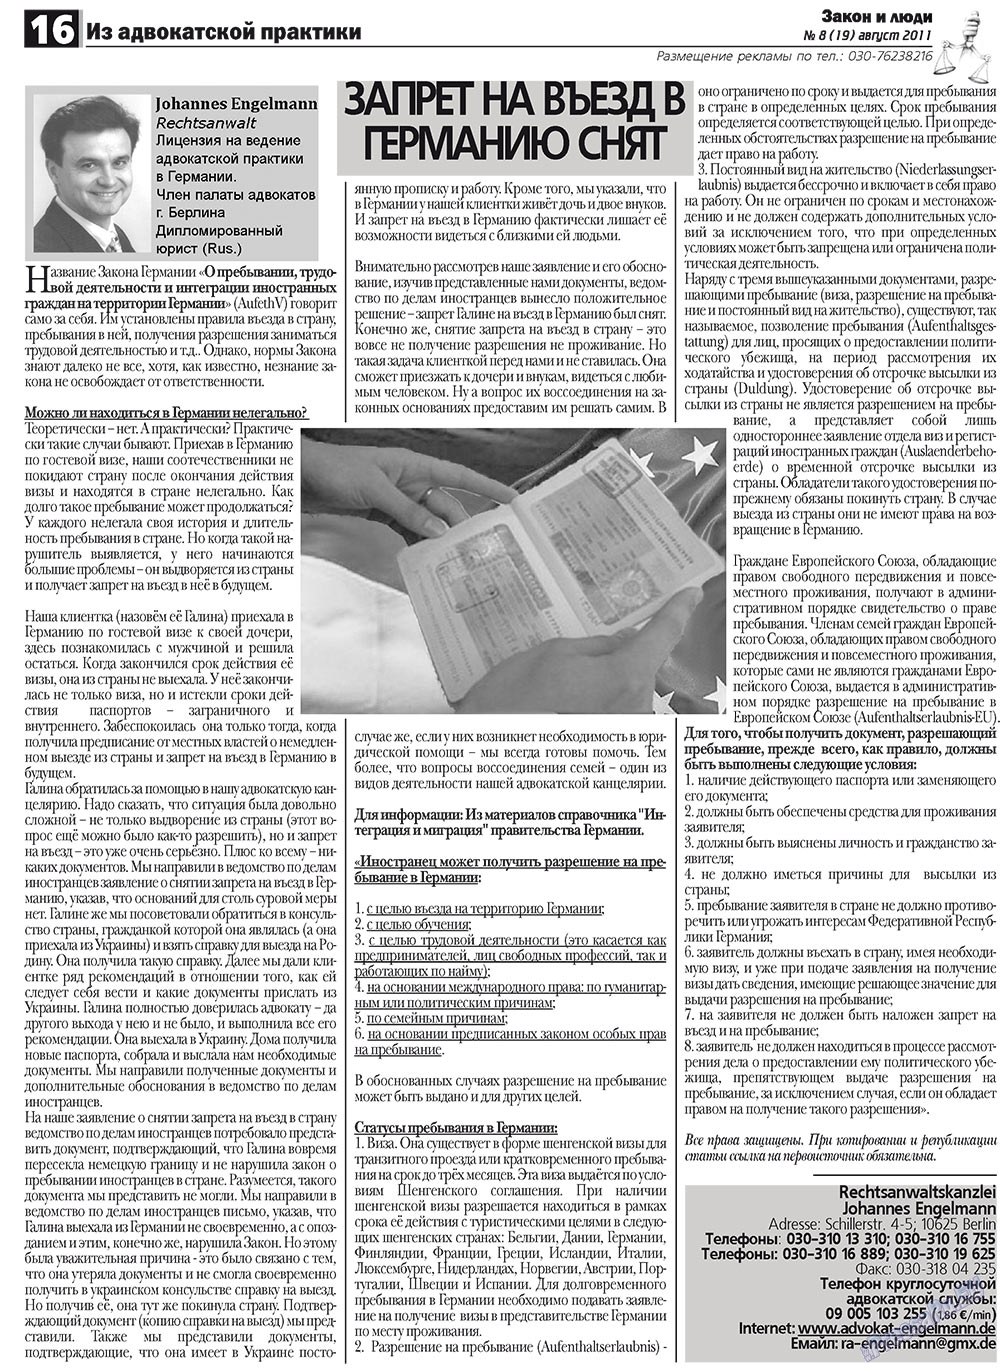 Закон и люди, газета. 2011 №8 стр.16